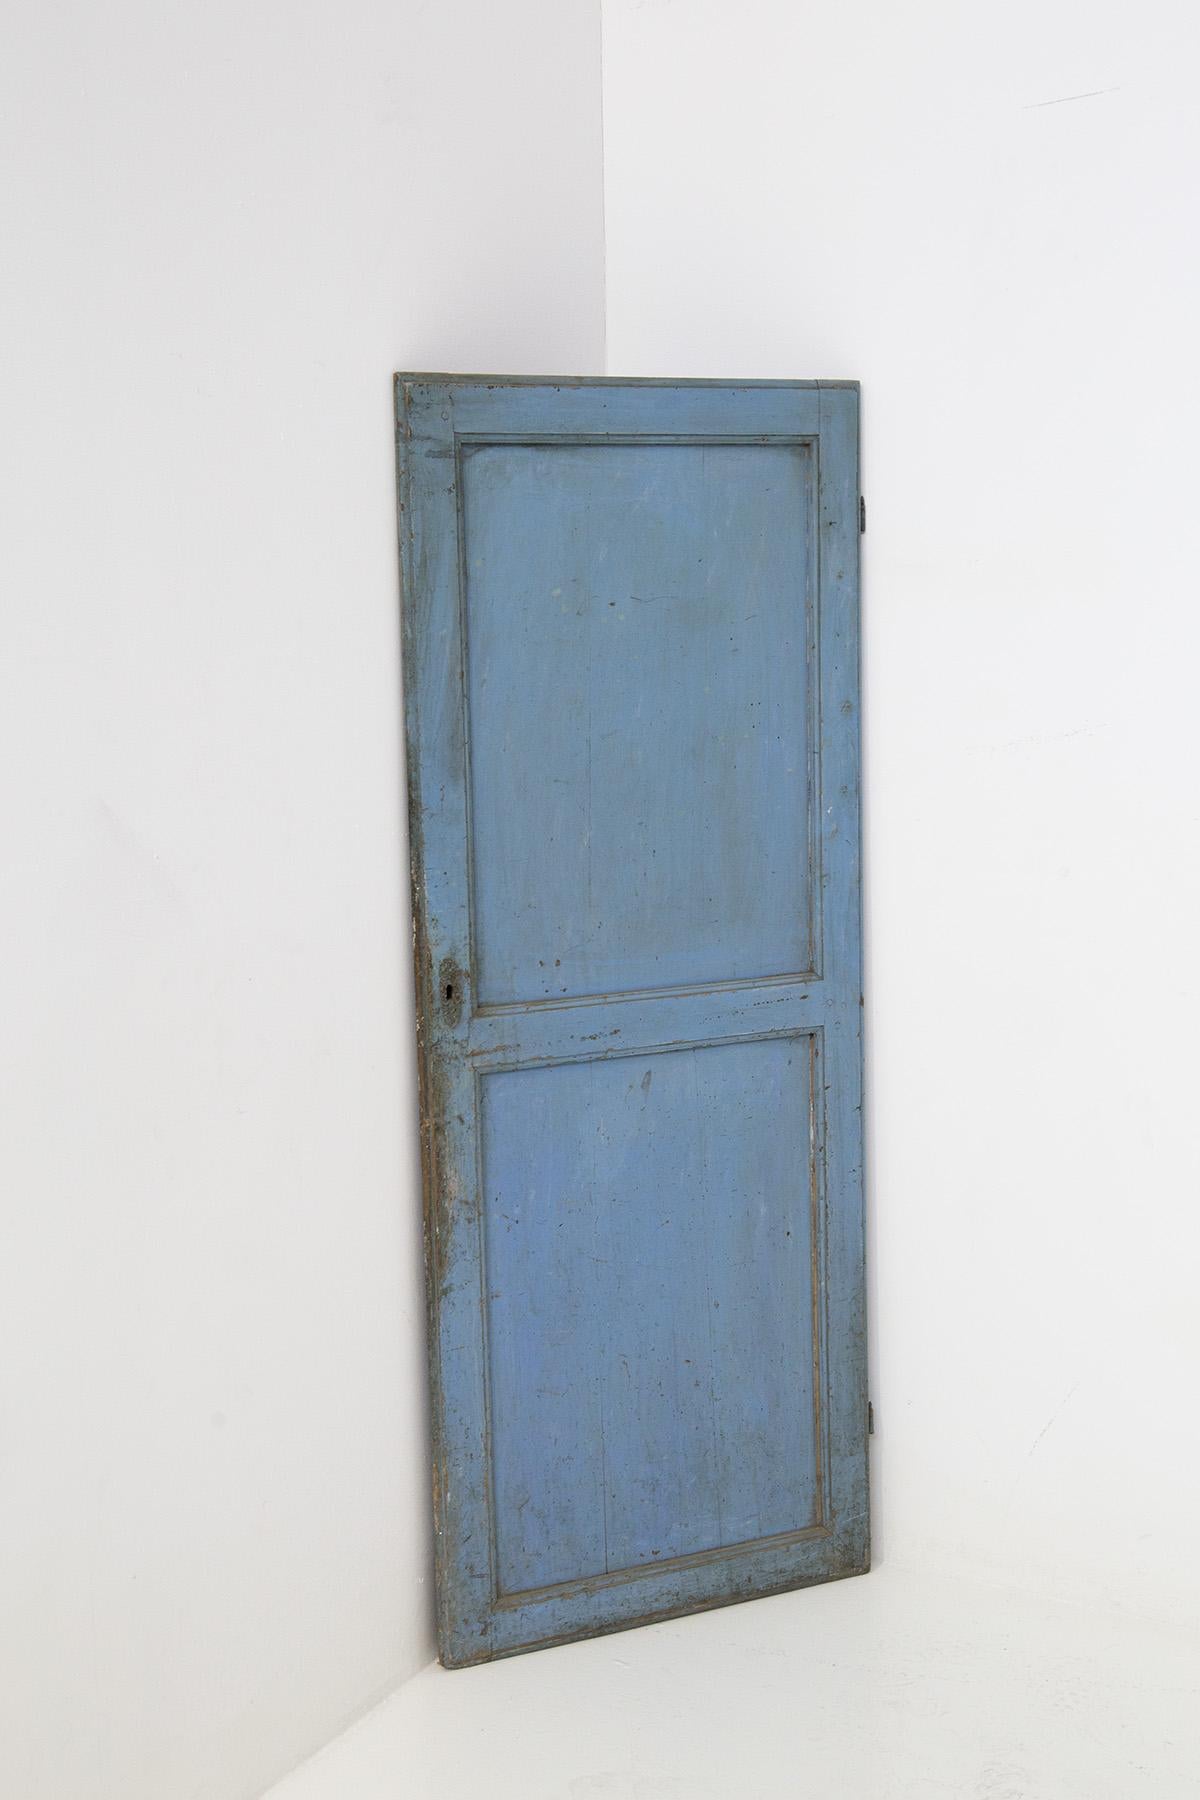 Dekorative italienische Tür im Fané-Stil aus den frühen 1920er Jahren. Die Tür ist aus blau-blau lackiertem Holz gefertigt. Die Tür ist offensichtlich antik und hat durch ihre Verwitterung eine perfekte dekorative Alterung erfahren. Man kann sehen,